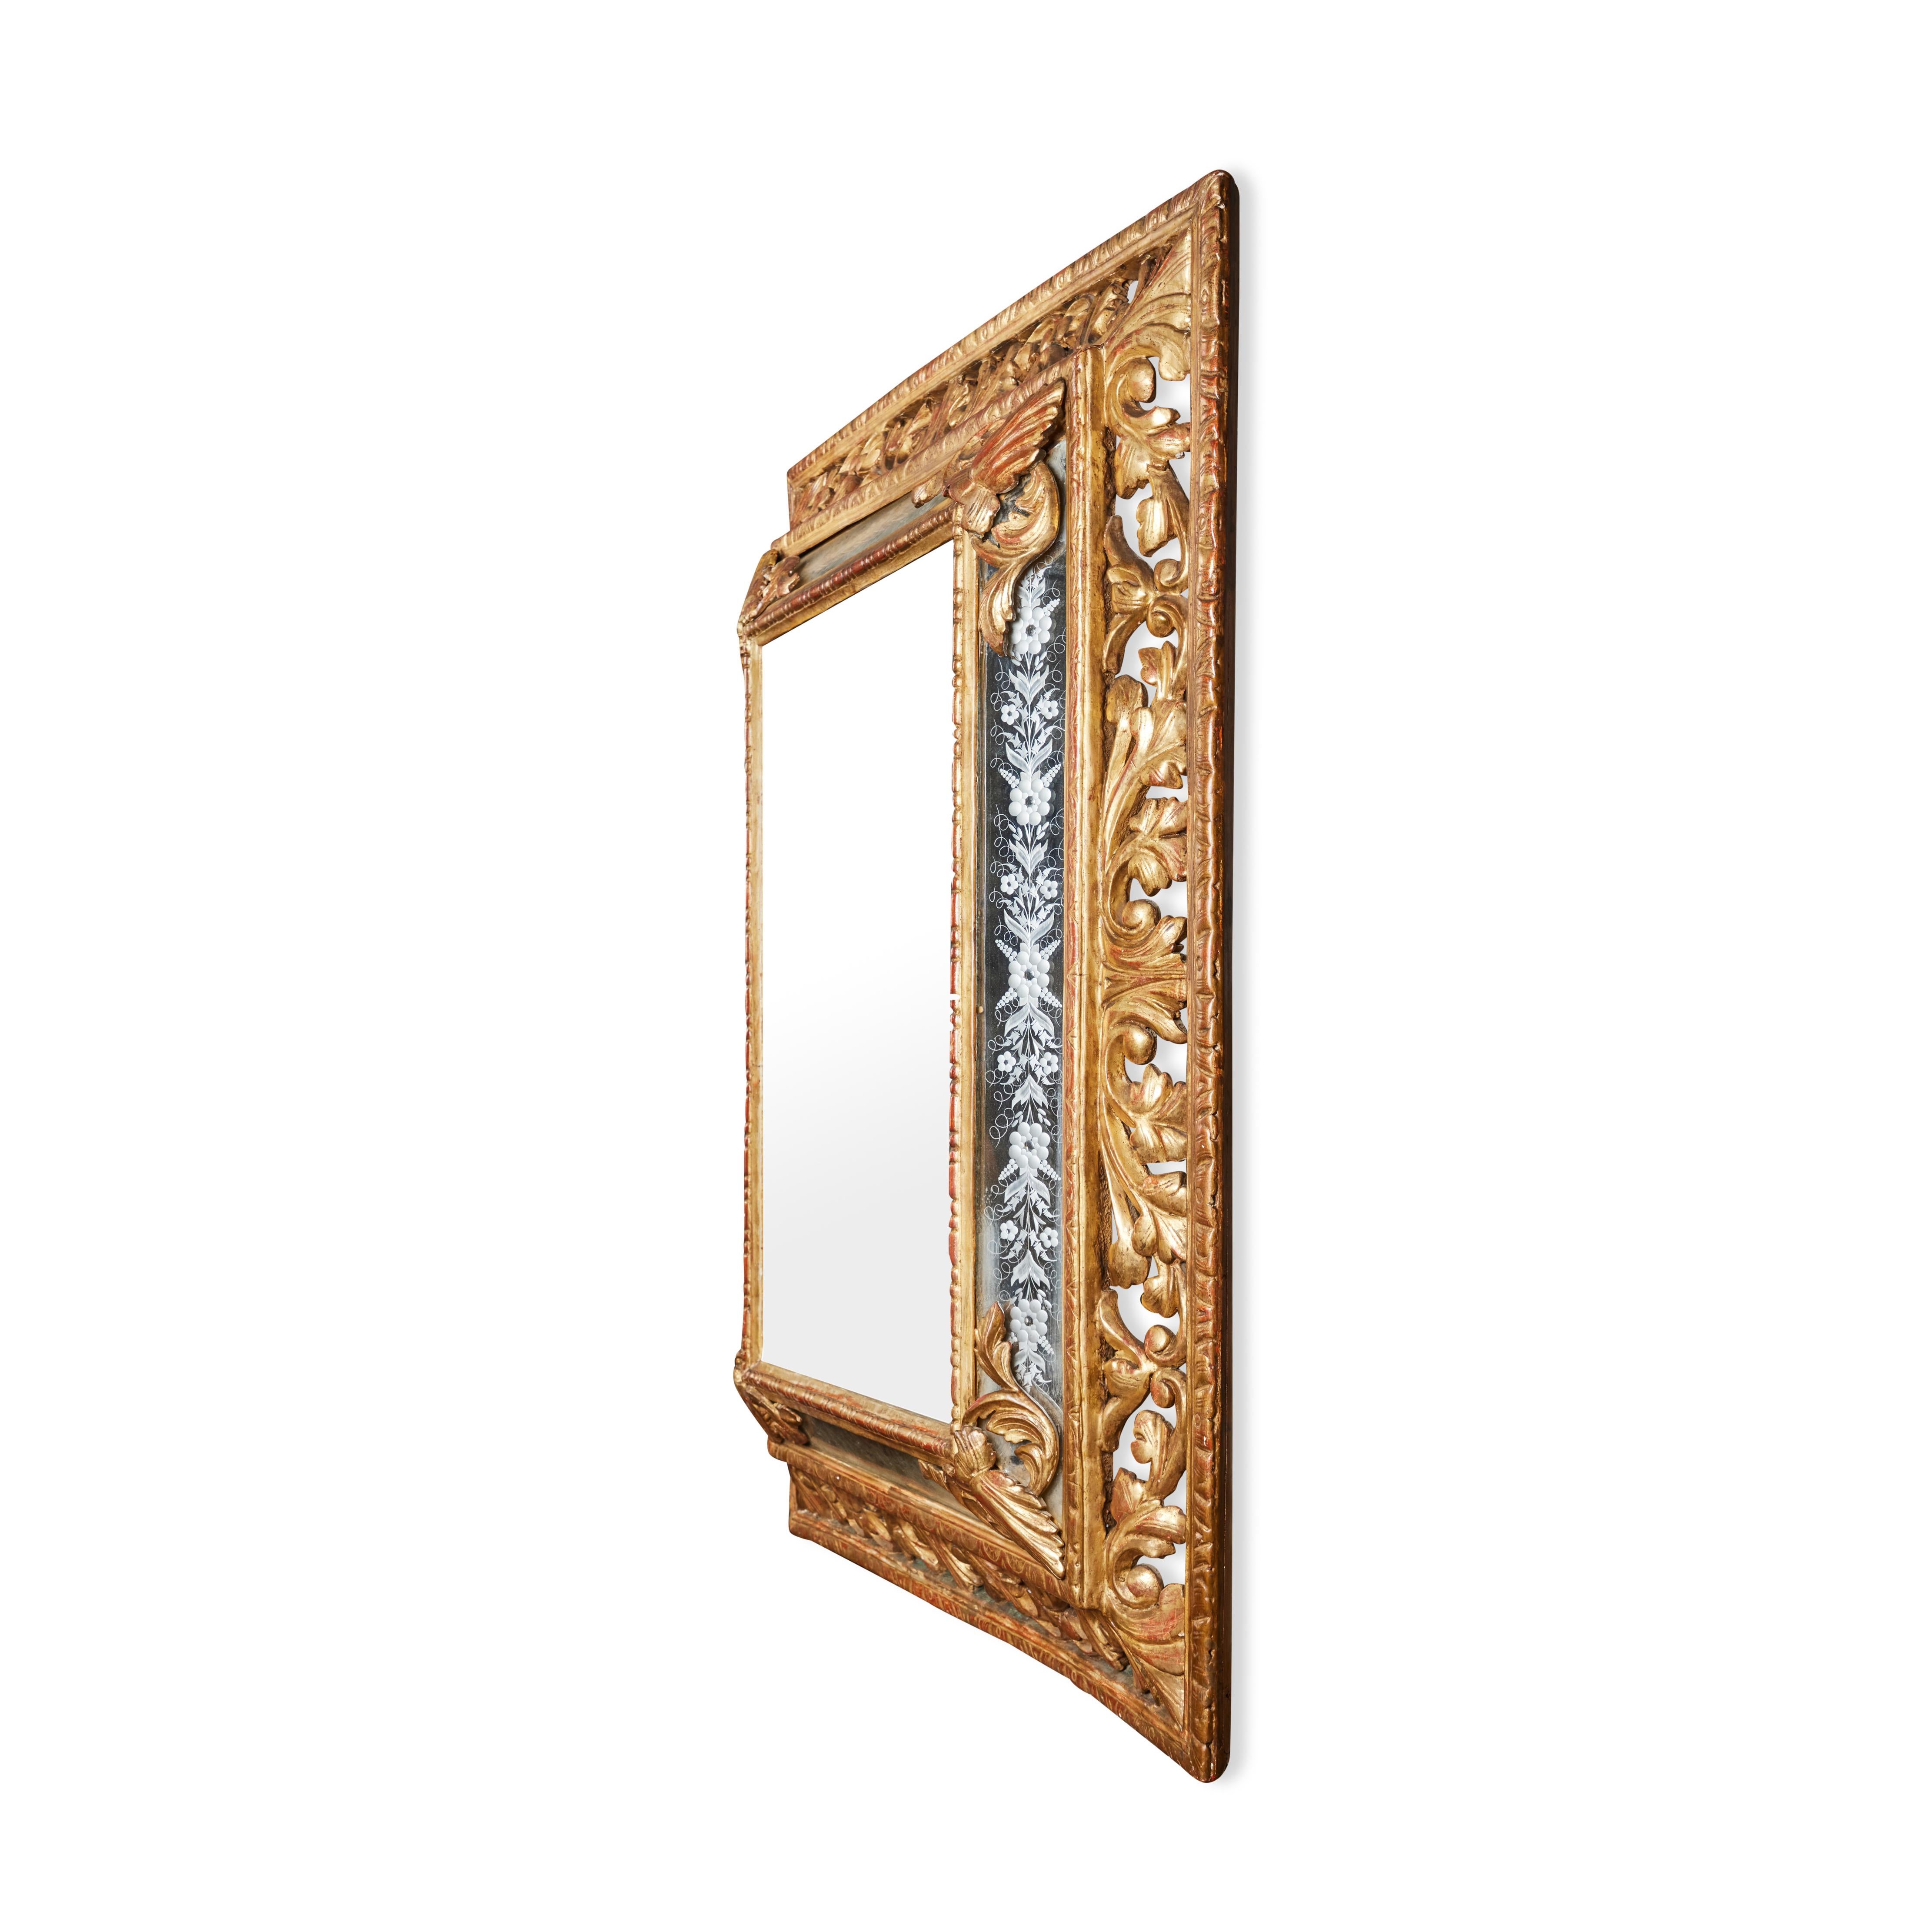 Miroir à gradins, sculpté à la main et doré, avec des inserts en verre gravé représentant des motifs floraux. 